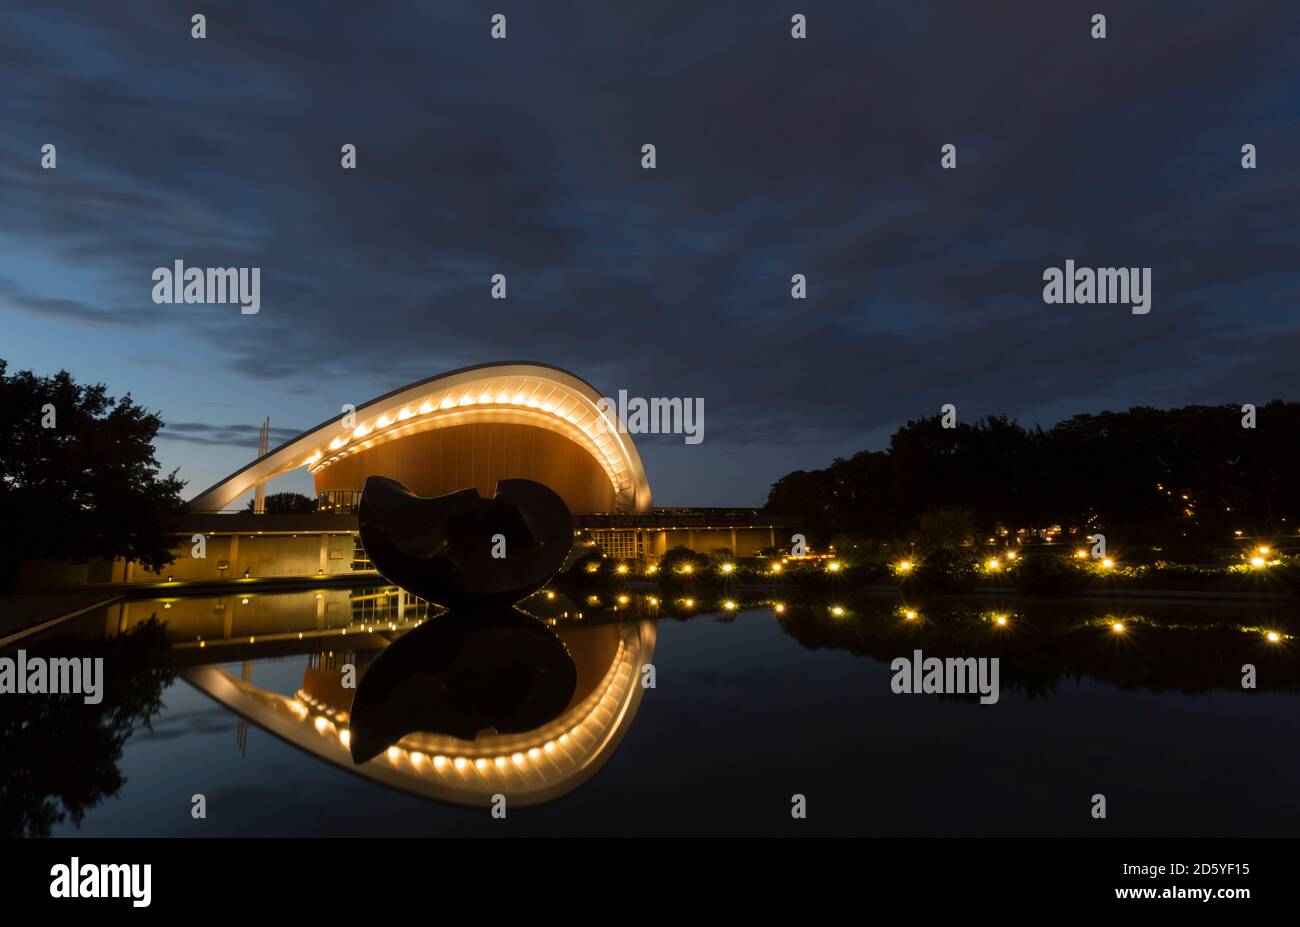 Germania, Berlino, casa illuminata delle culture del mondo Foto Stock